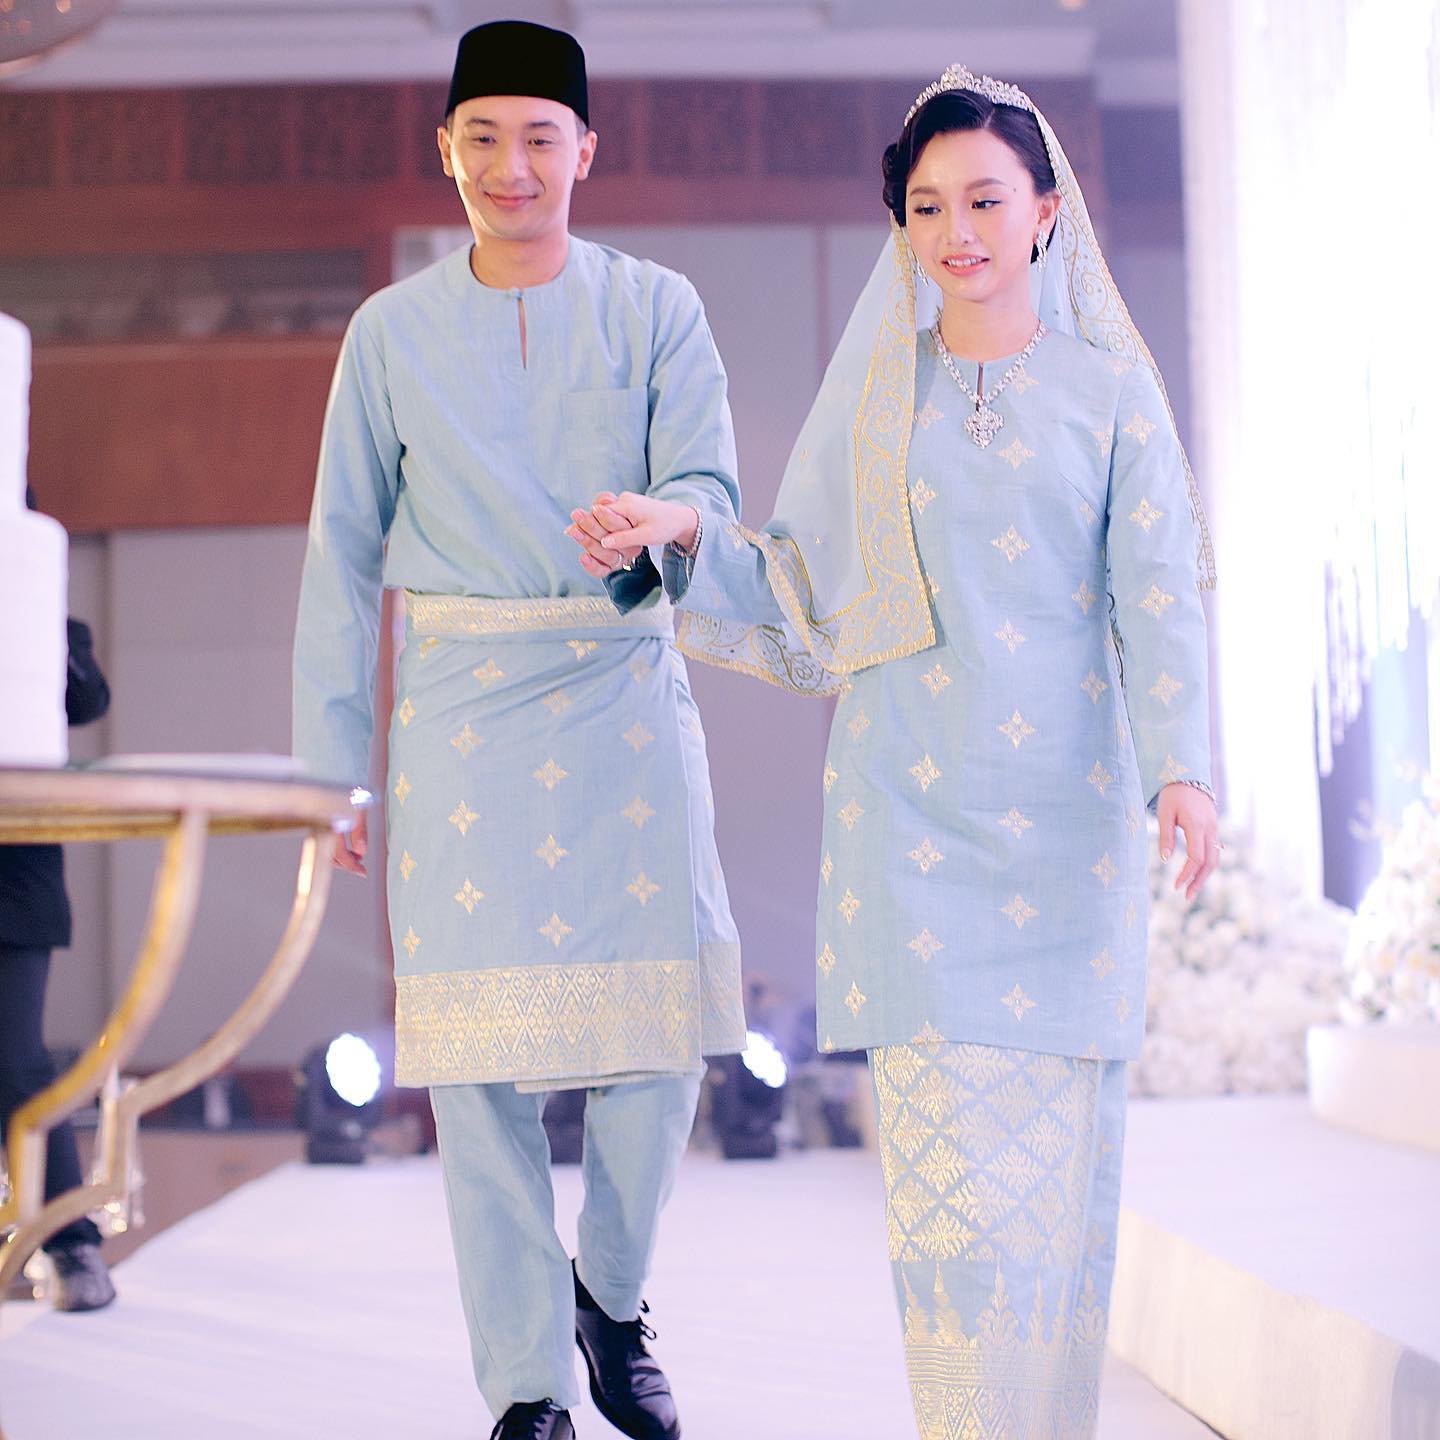 Busana bersanding ‘simple’ & klasik, pasangan pengantin raih pujian netizen